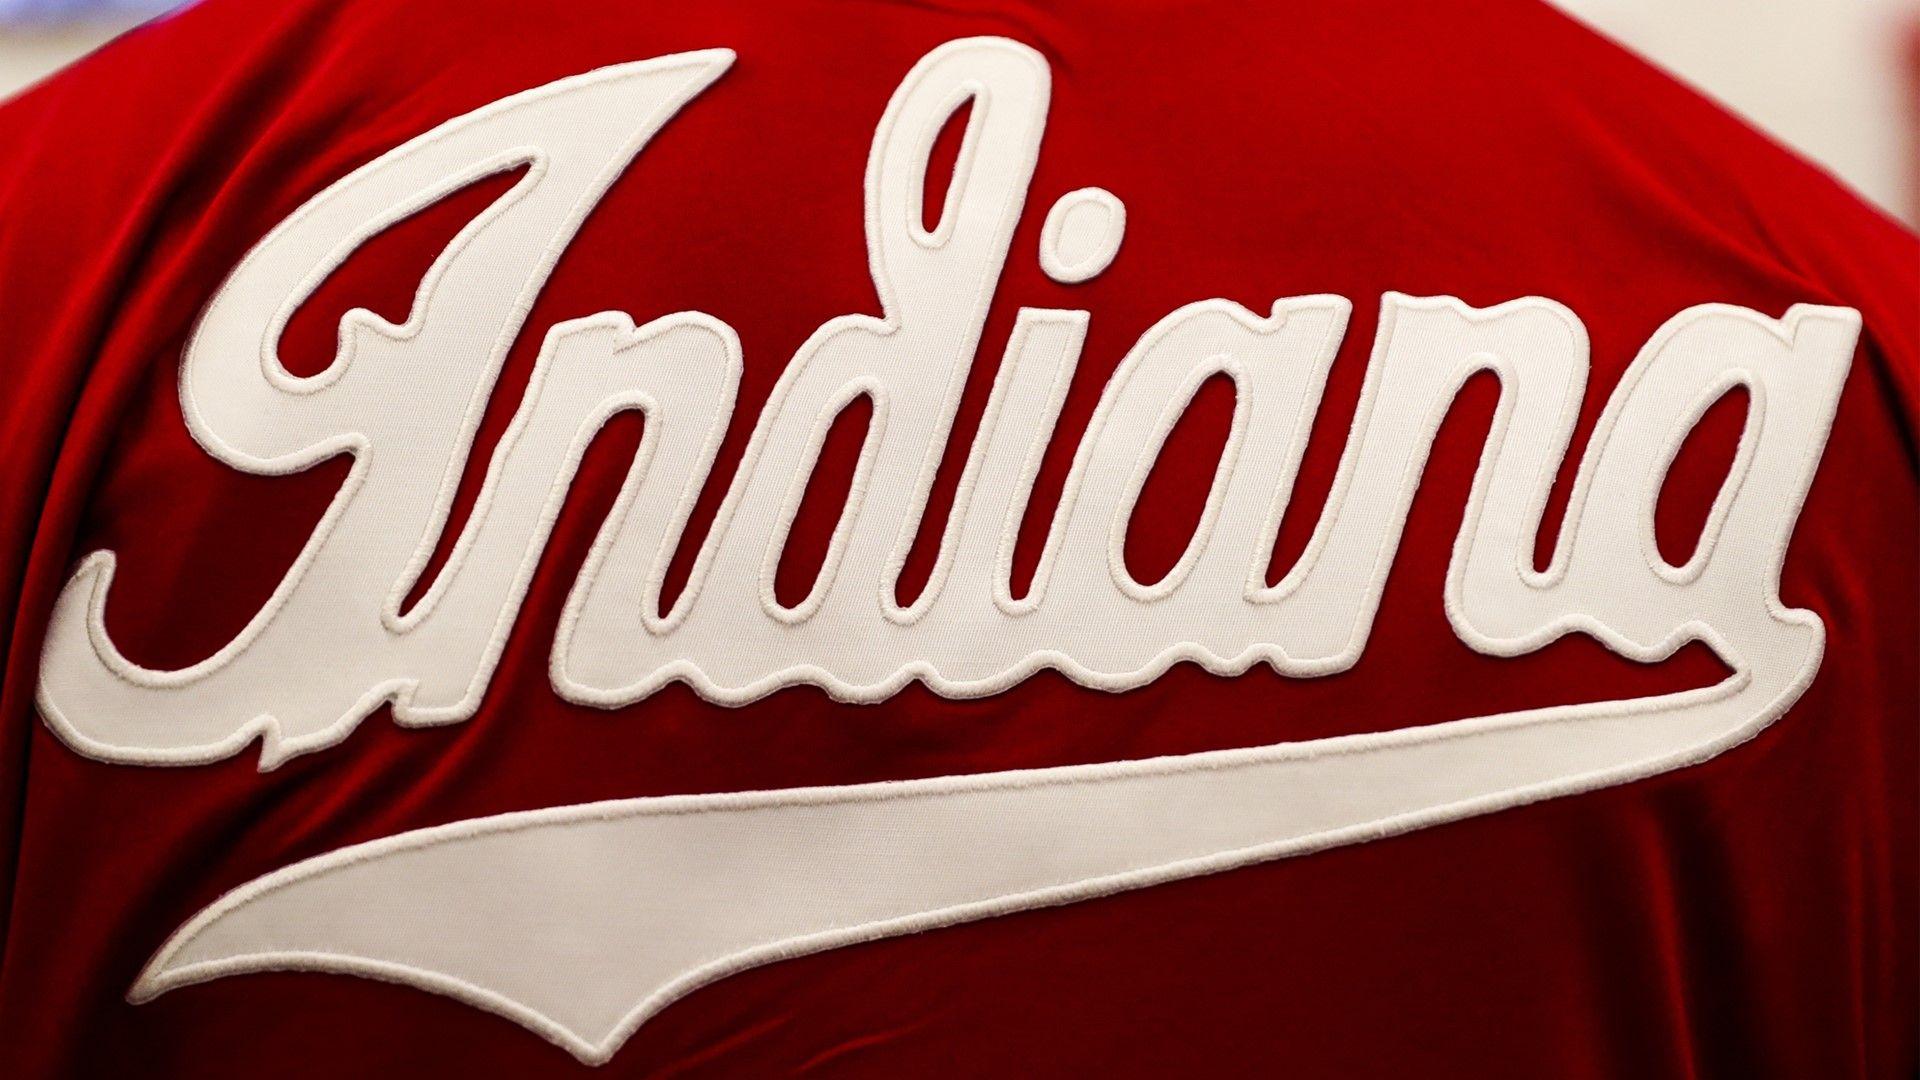 Indiana University Logo - Indiana University Athletics Unveils First-Ever IU Athletics Brand ...